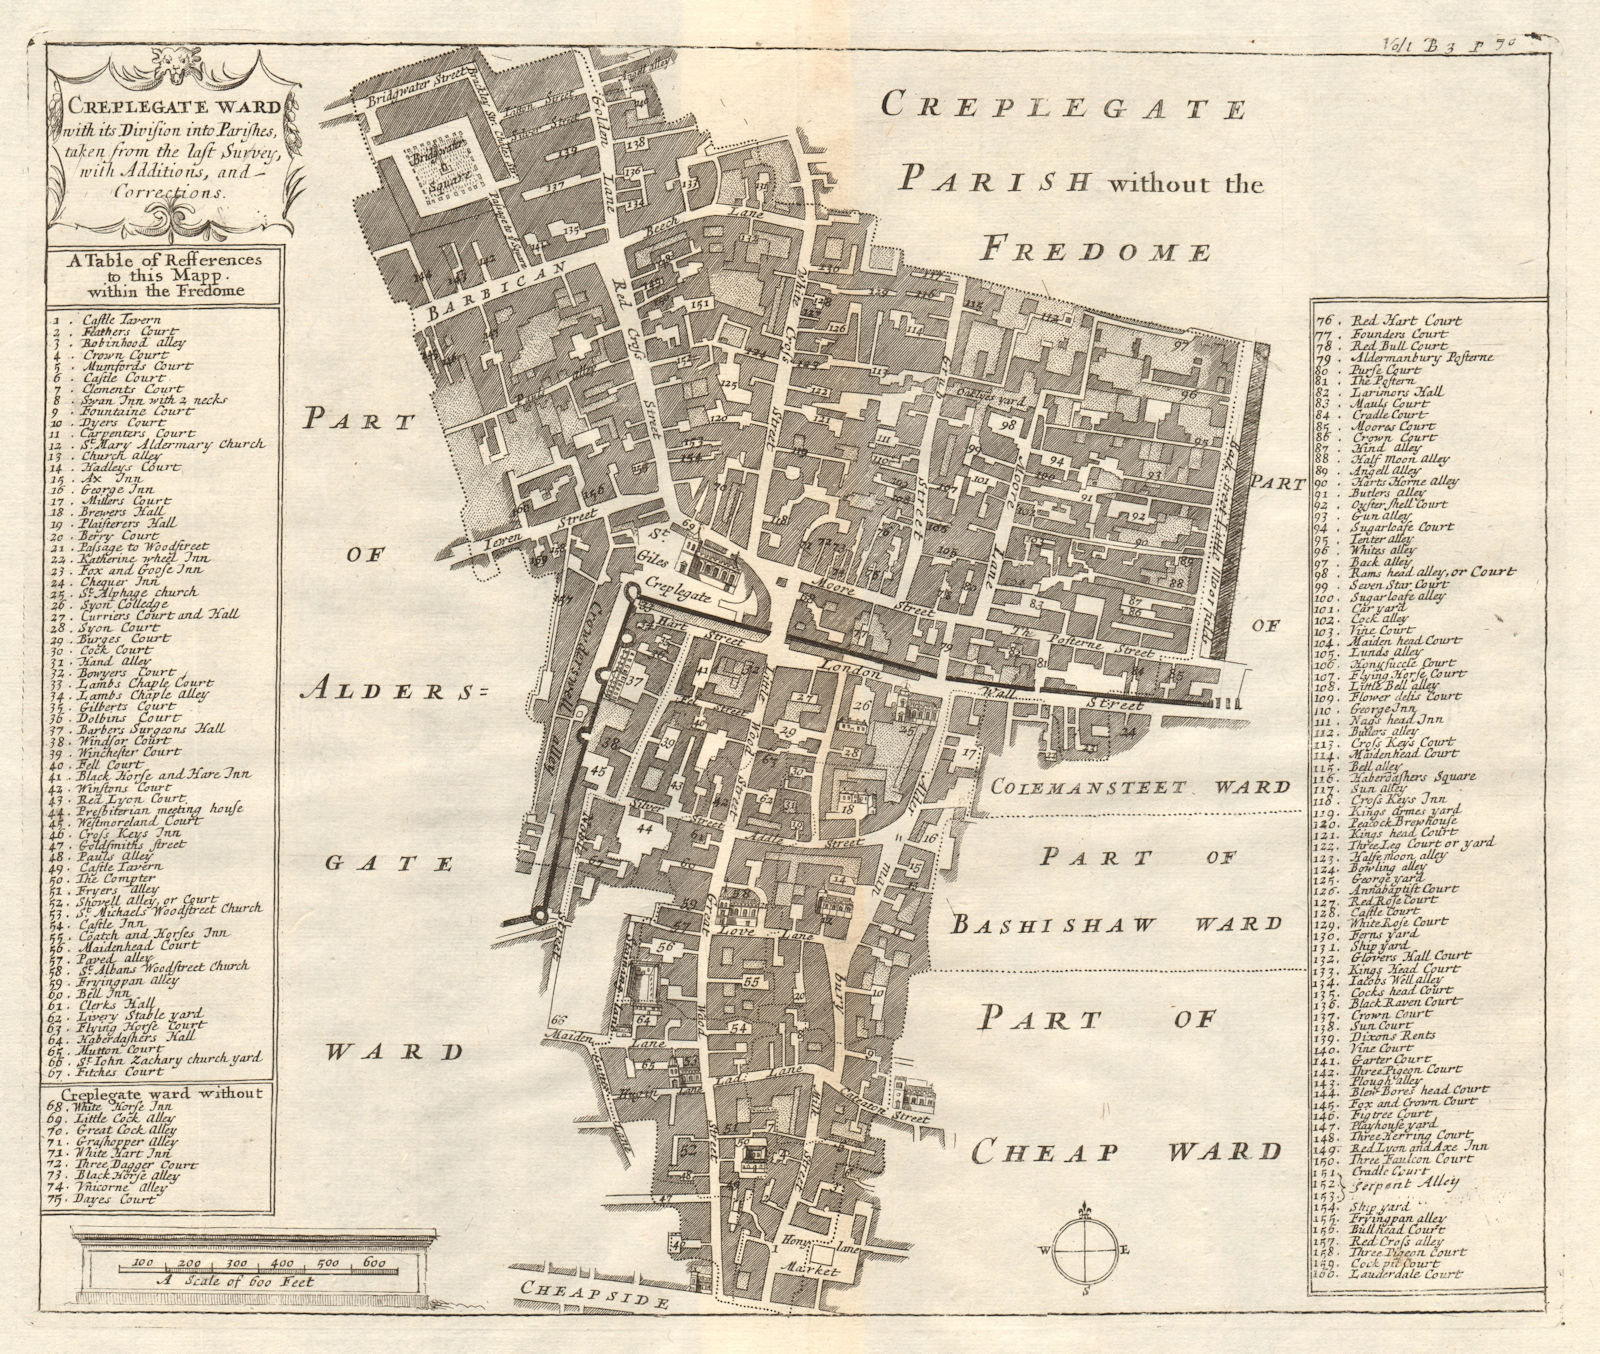 'Creplegate Ward'. Cripplegate. Wood Street. London Wall. STOW/STRYPE 1720 map